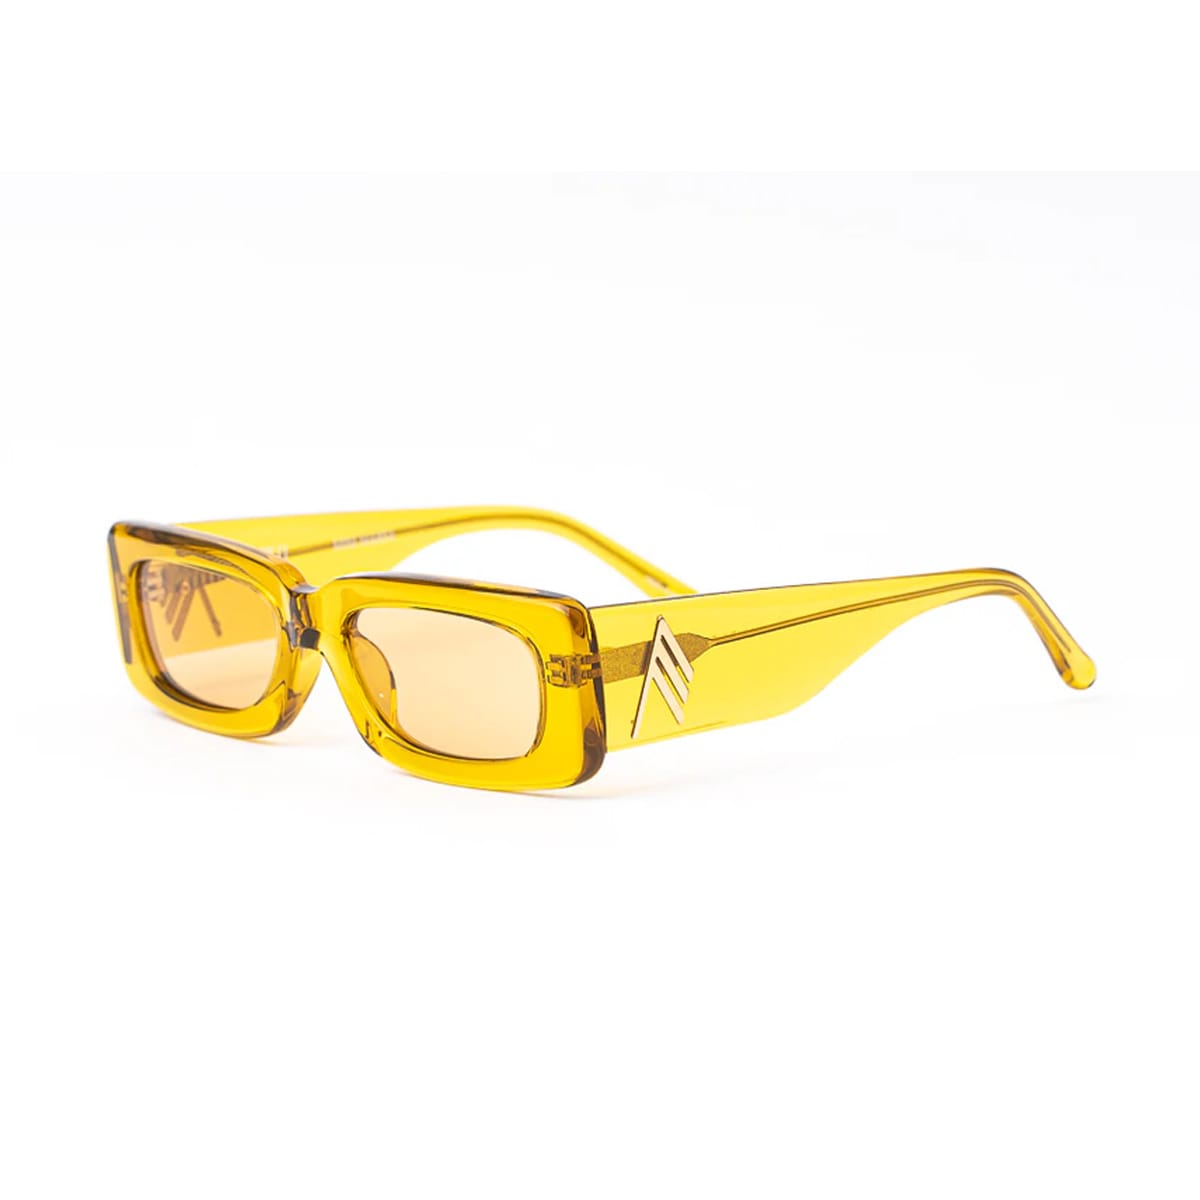 Mini Marfa Sunglasses